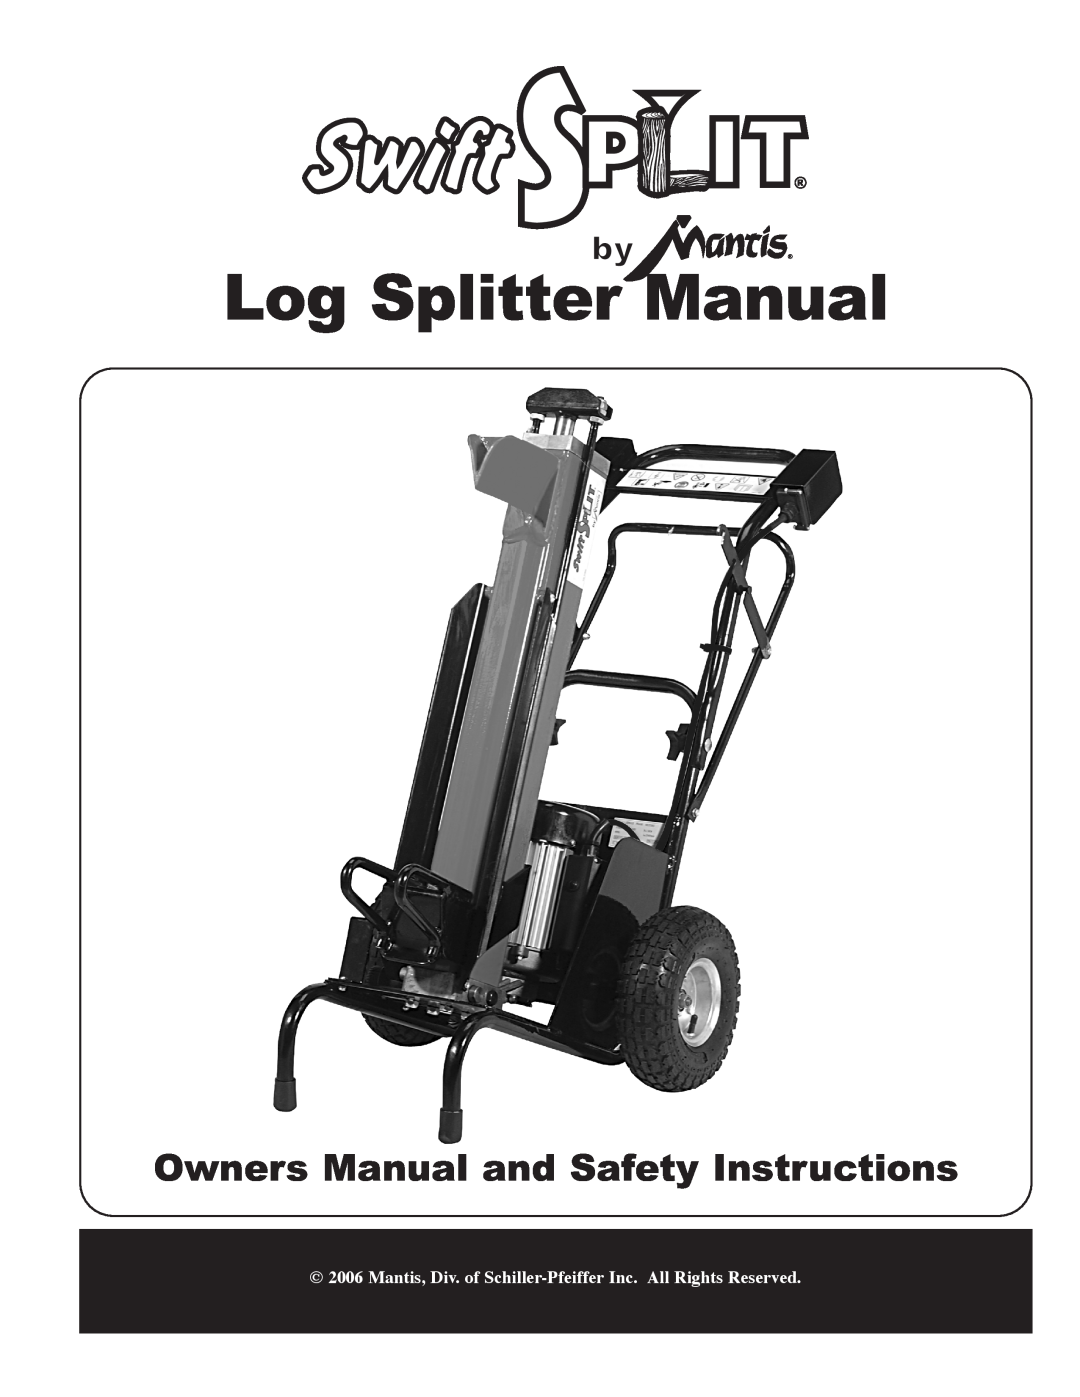 Mantis Swift Split owner manual Log Splitter Manual, Mantis, Div. of Schiller-Pfeiffer Inc. All Rights Reserved 